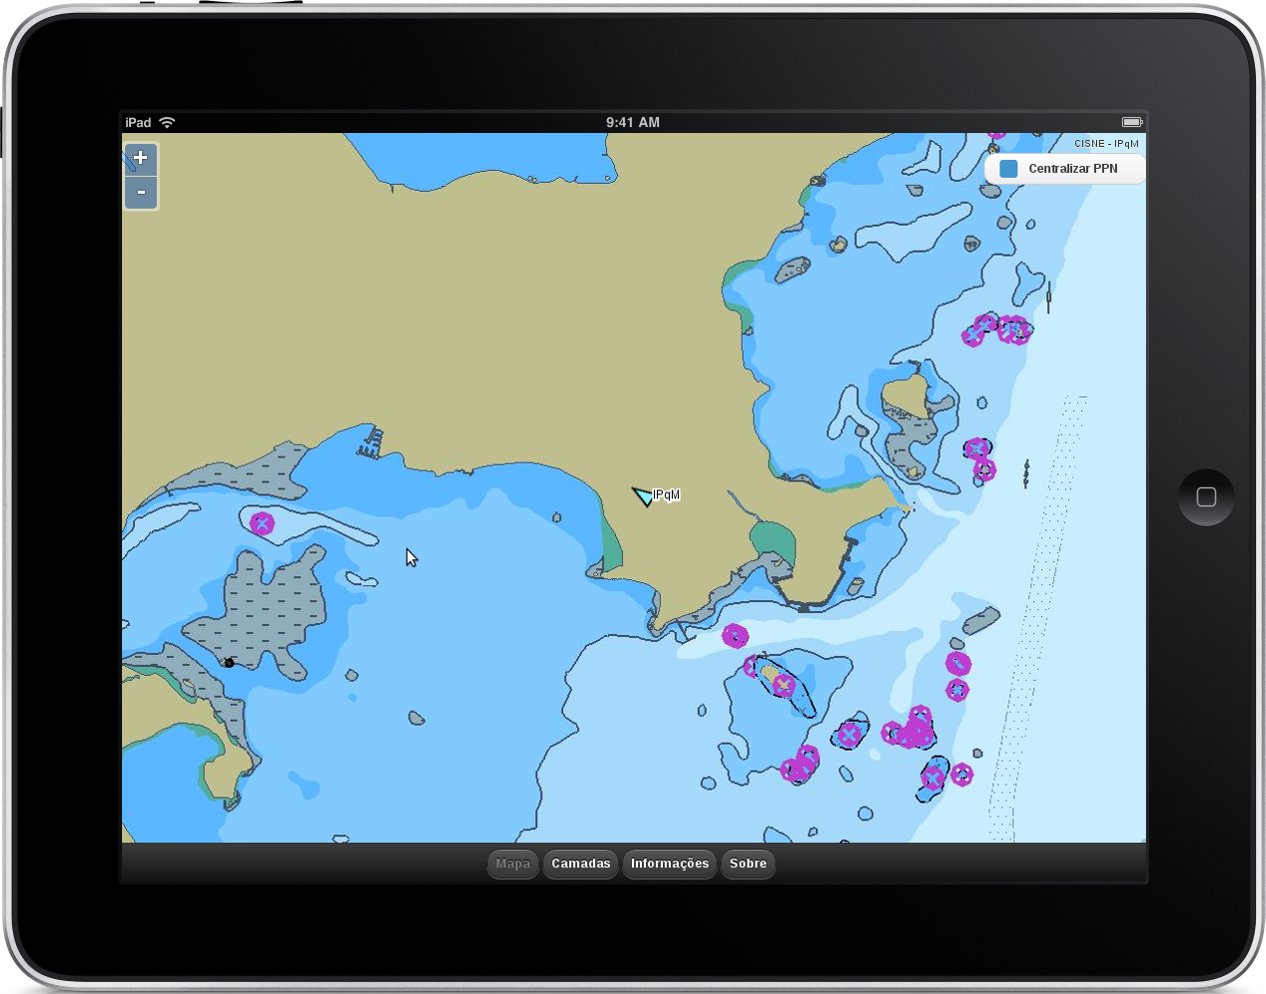 Interface web de apoio ao sistema de navegação utilizado pela Marinha do Brasil